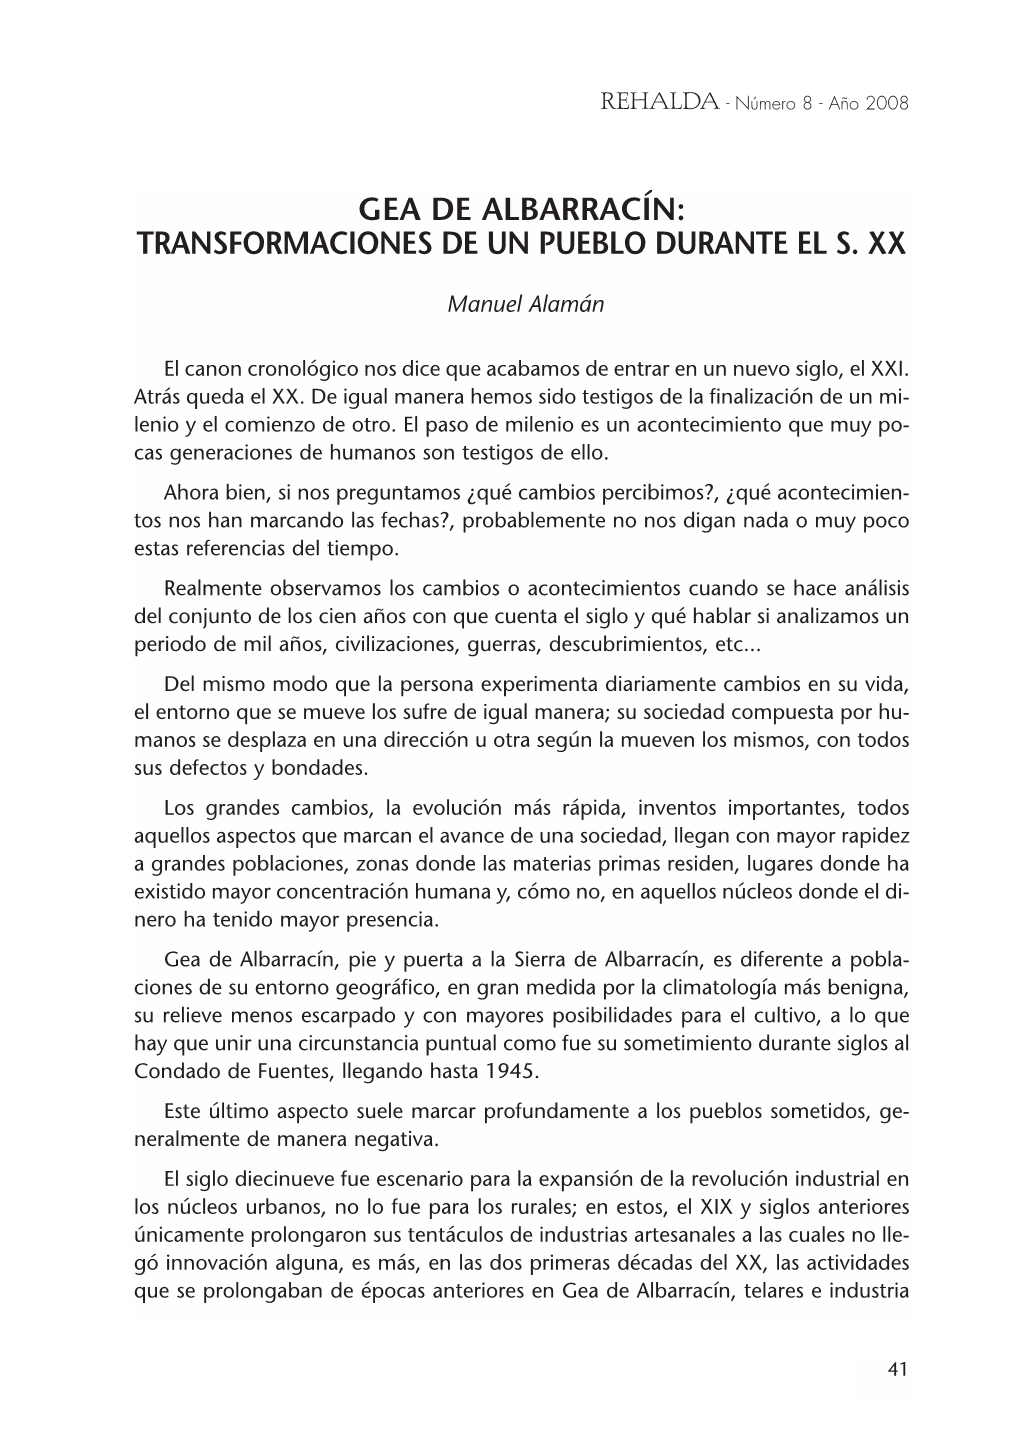 Gea De Albarracín: Transformaciones De Un Pueblo Durante El S